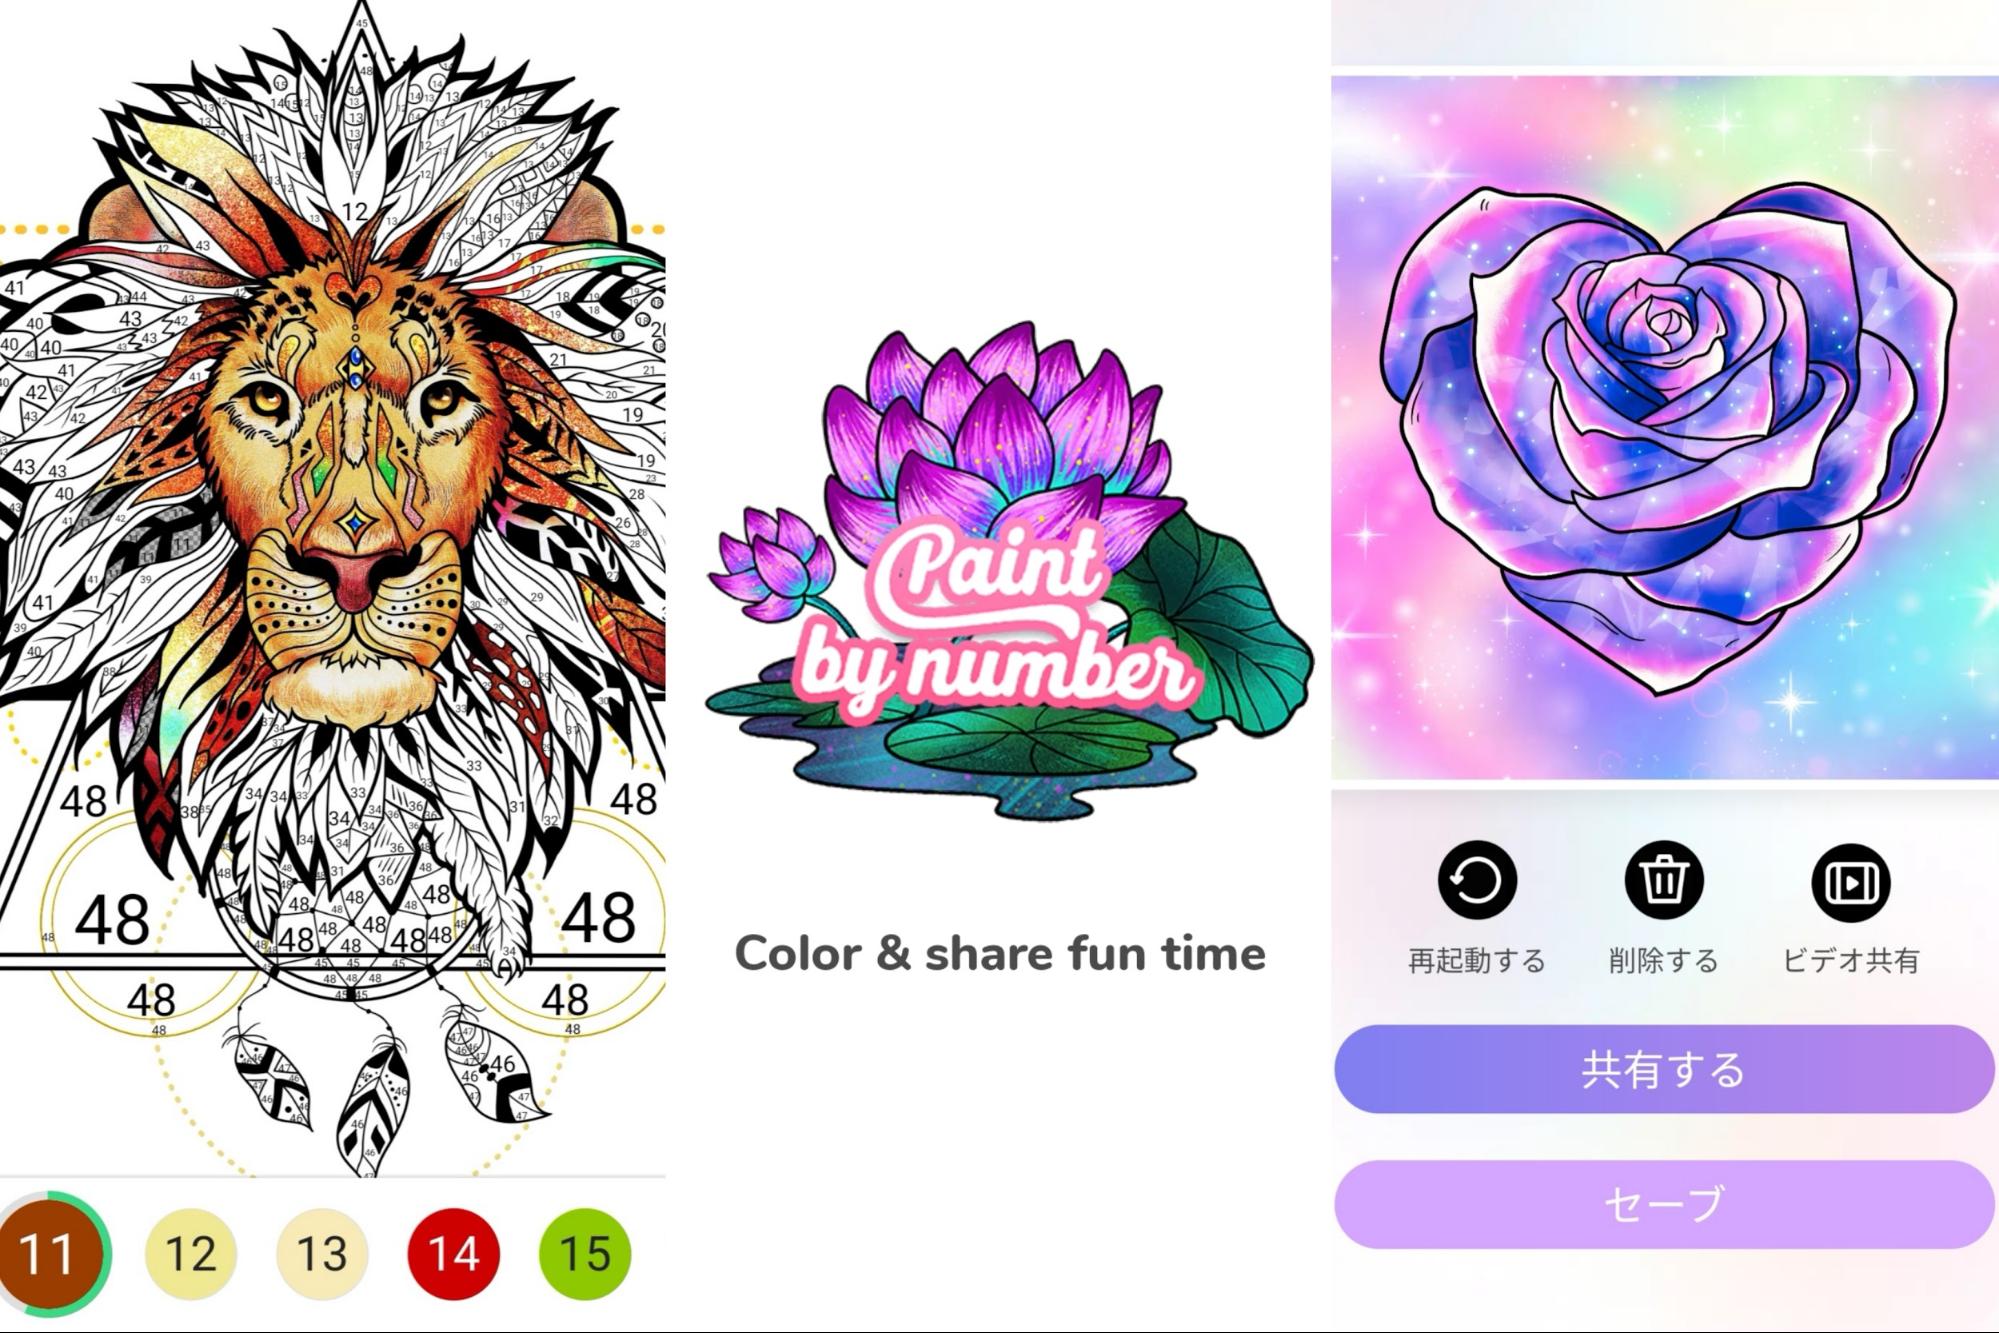 大人用の無料塗り絵ゲームアプリ「数字で塗り絵」の評価レビュー | 暇つぶしスマホゲームブログ